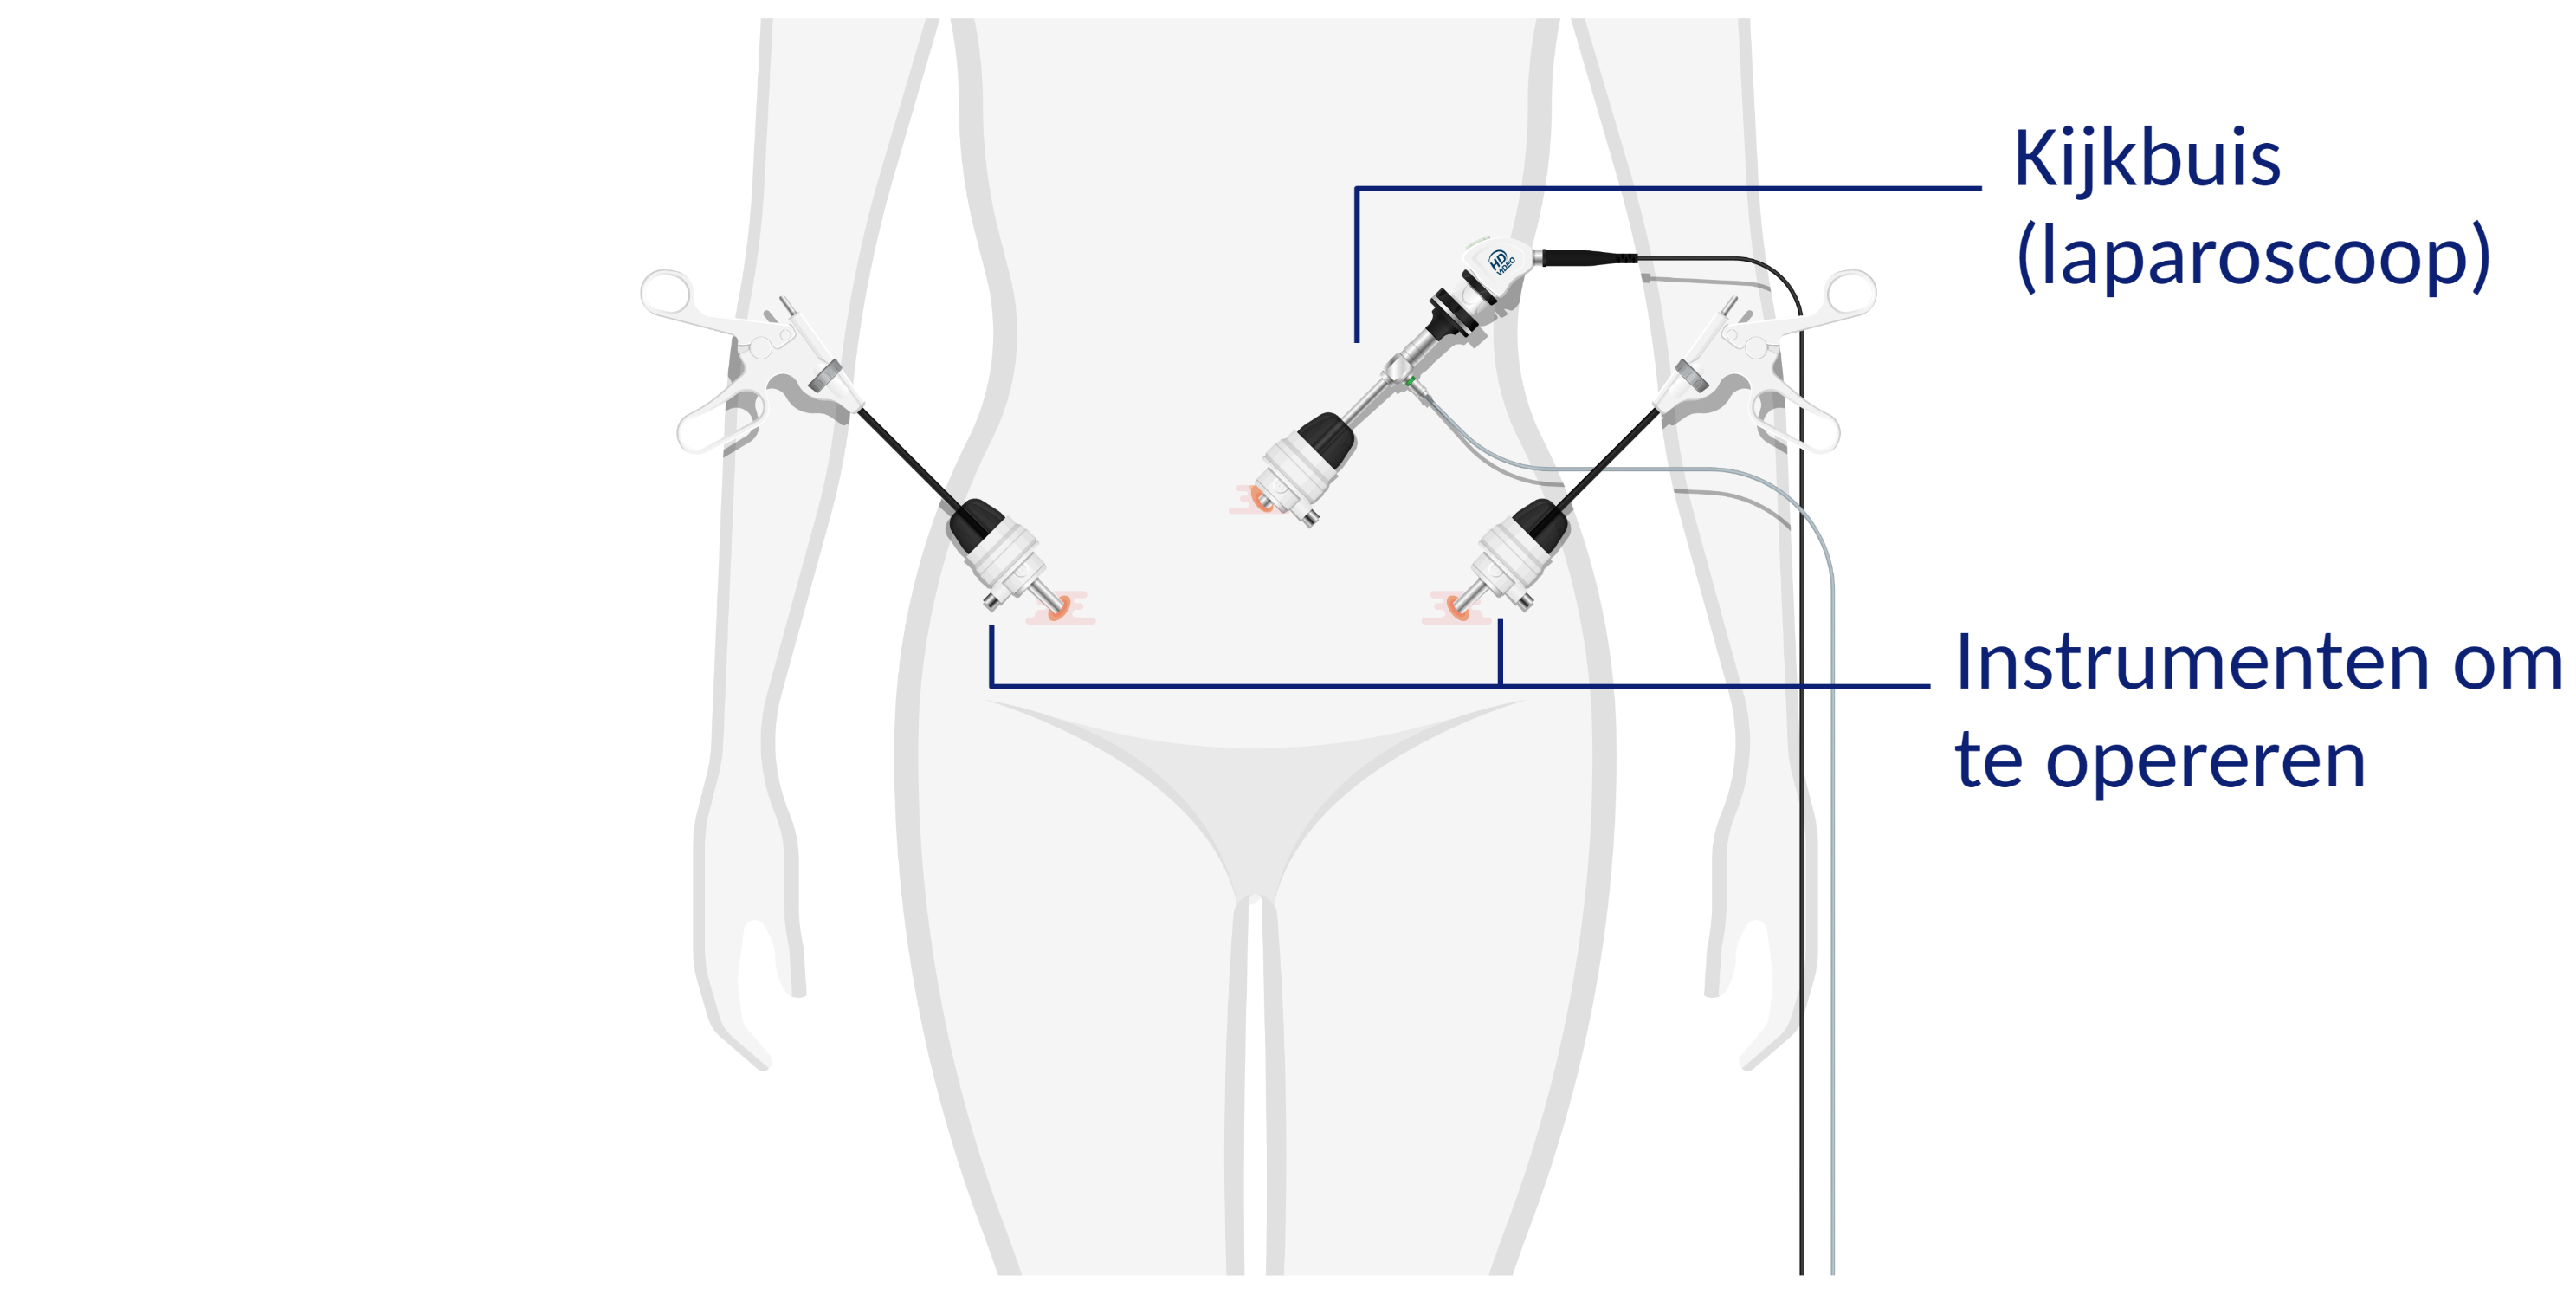 Lichaam tijdens operatie met 3 operatie-instrumenten. 1 kijkbuis (laparoscoop) vlak onder de navel en 2 instrumenten om mee te opereren